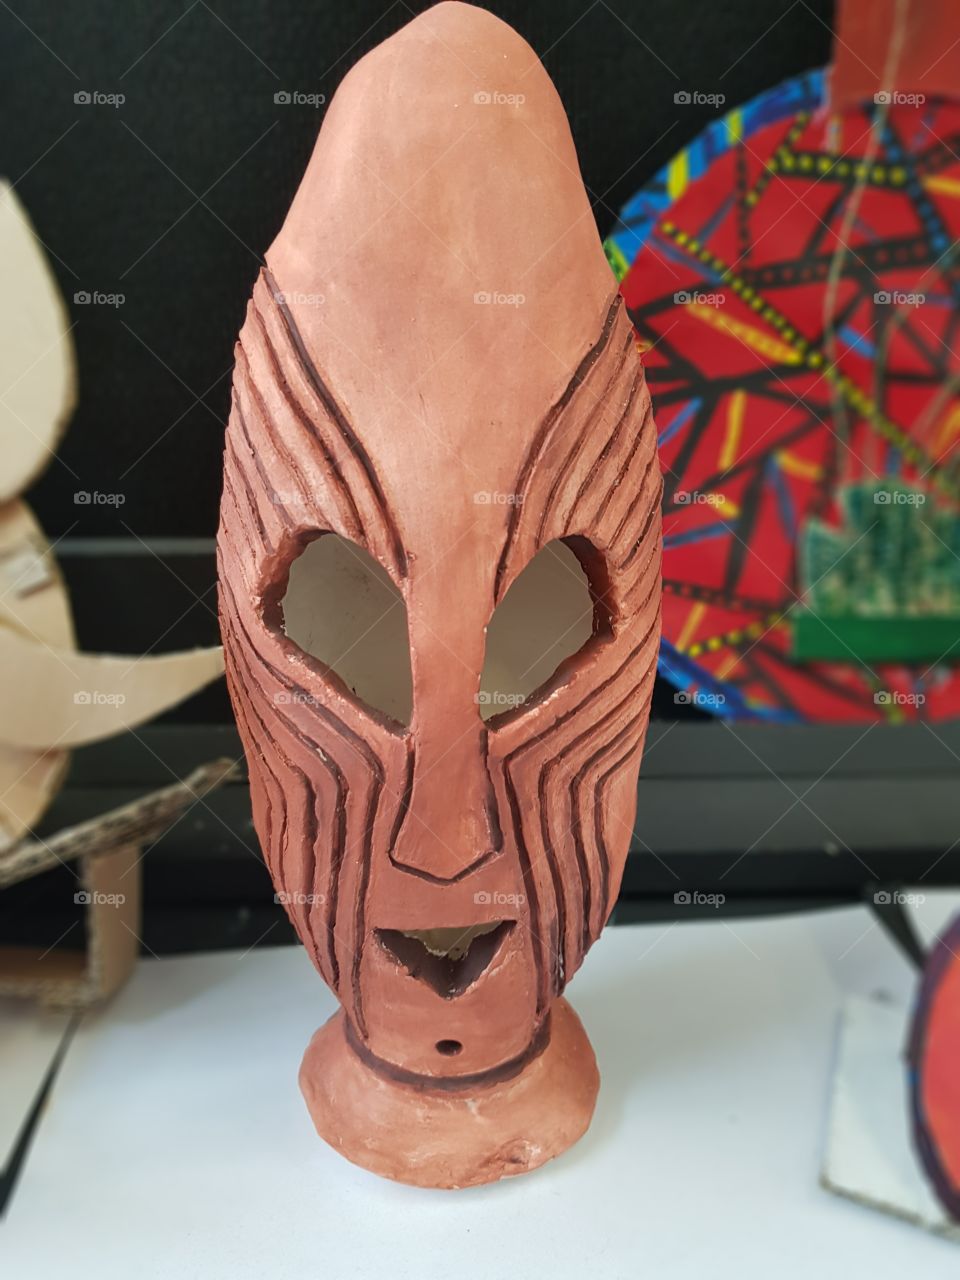 zulu mask